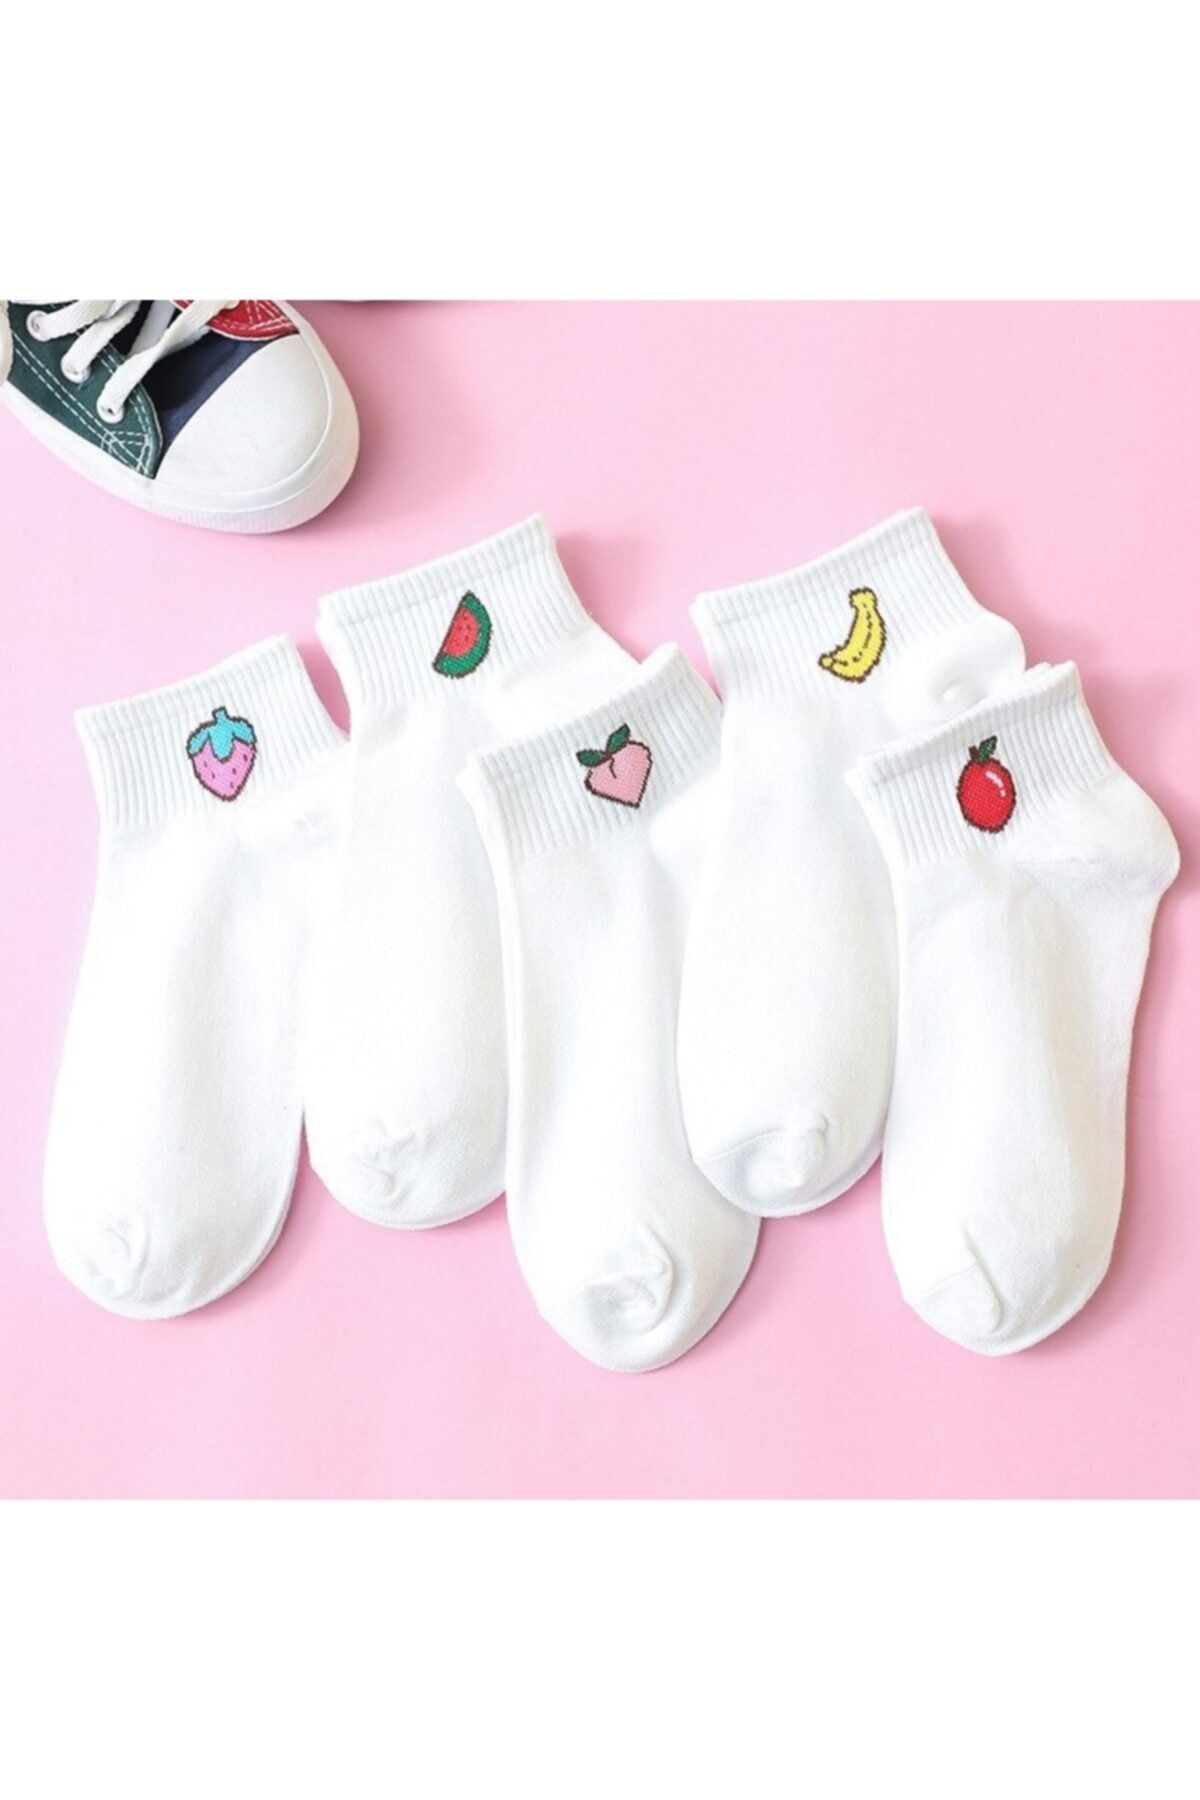 çorapmanya 5 Çift Meyve Desenli Kadın Yarım Konç Çorap